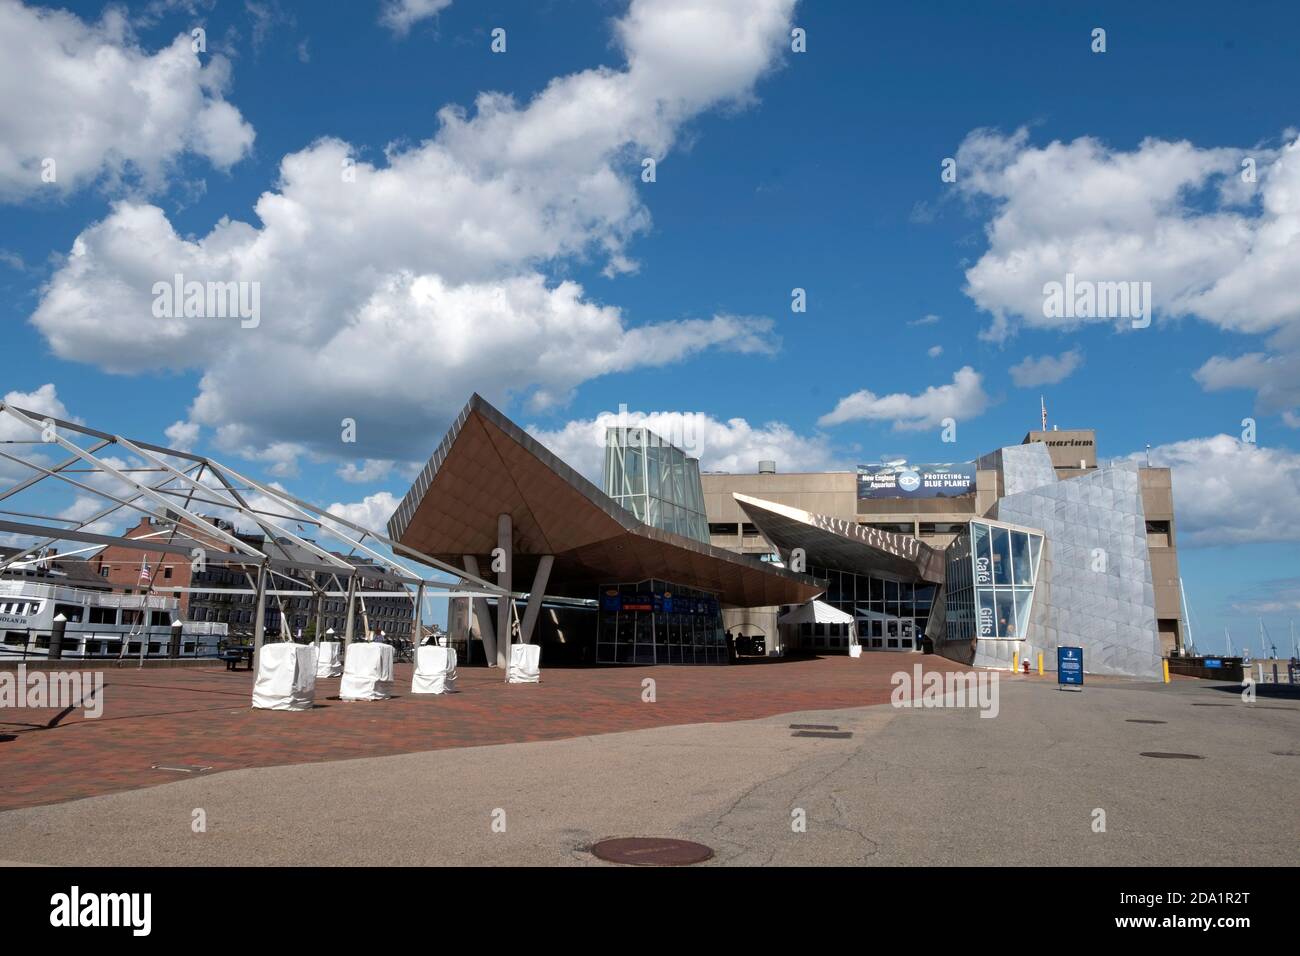 The New England Aquarium is a public aquarium located in Boston, Massachusetts, USA. 08/01/2020 Stock Photo